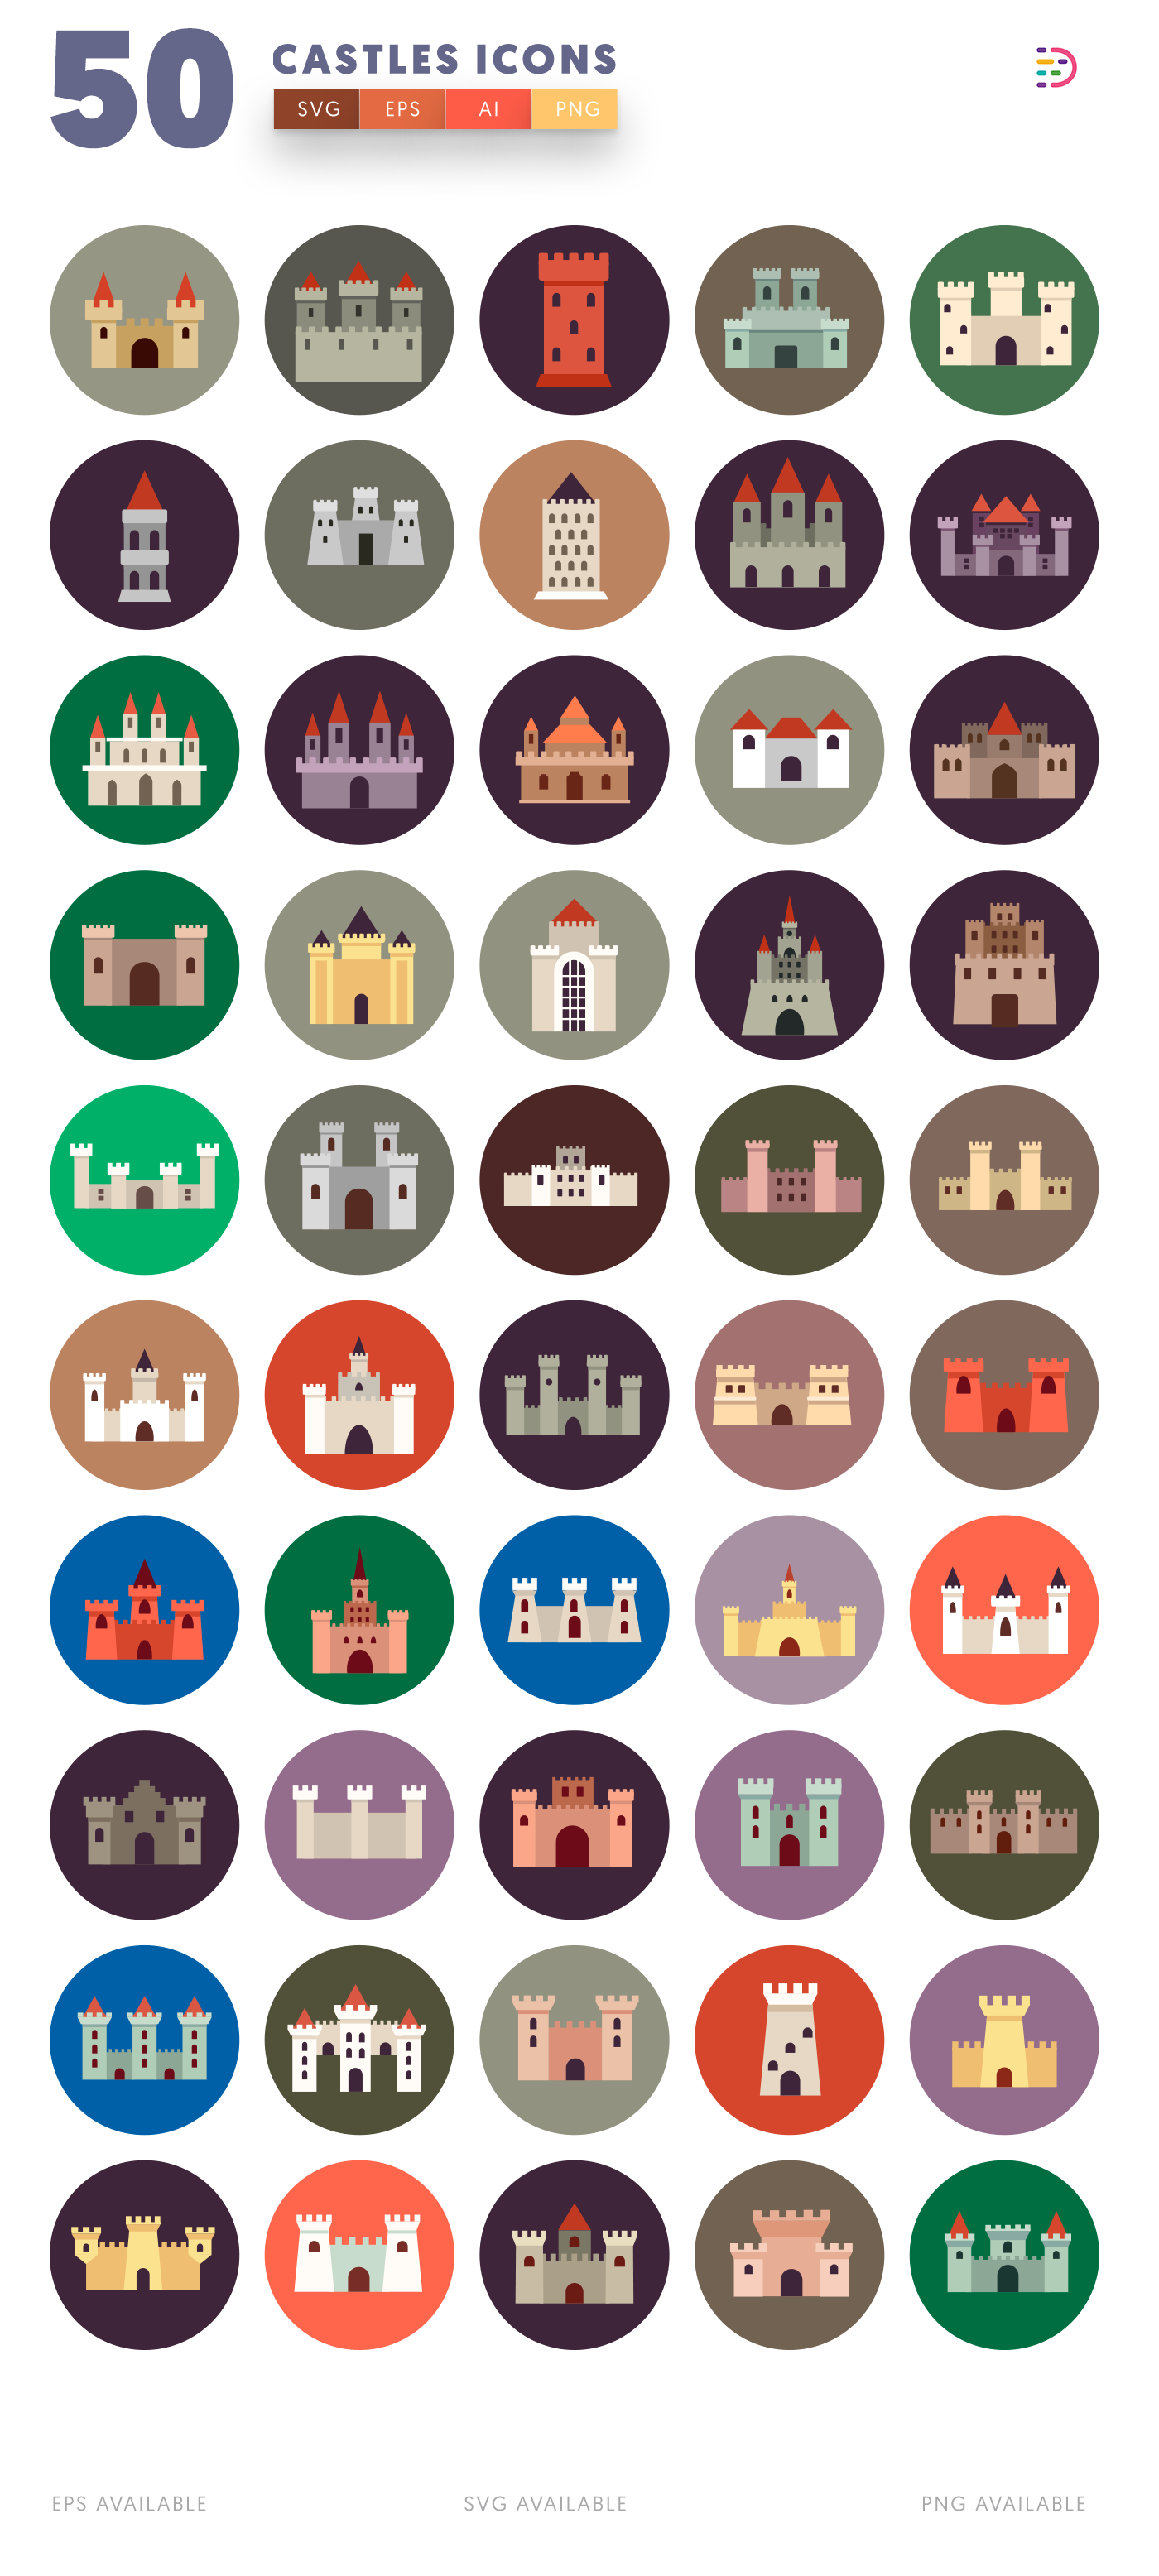 50 Castle Icons list